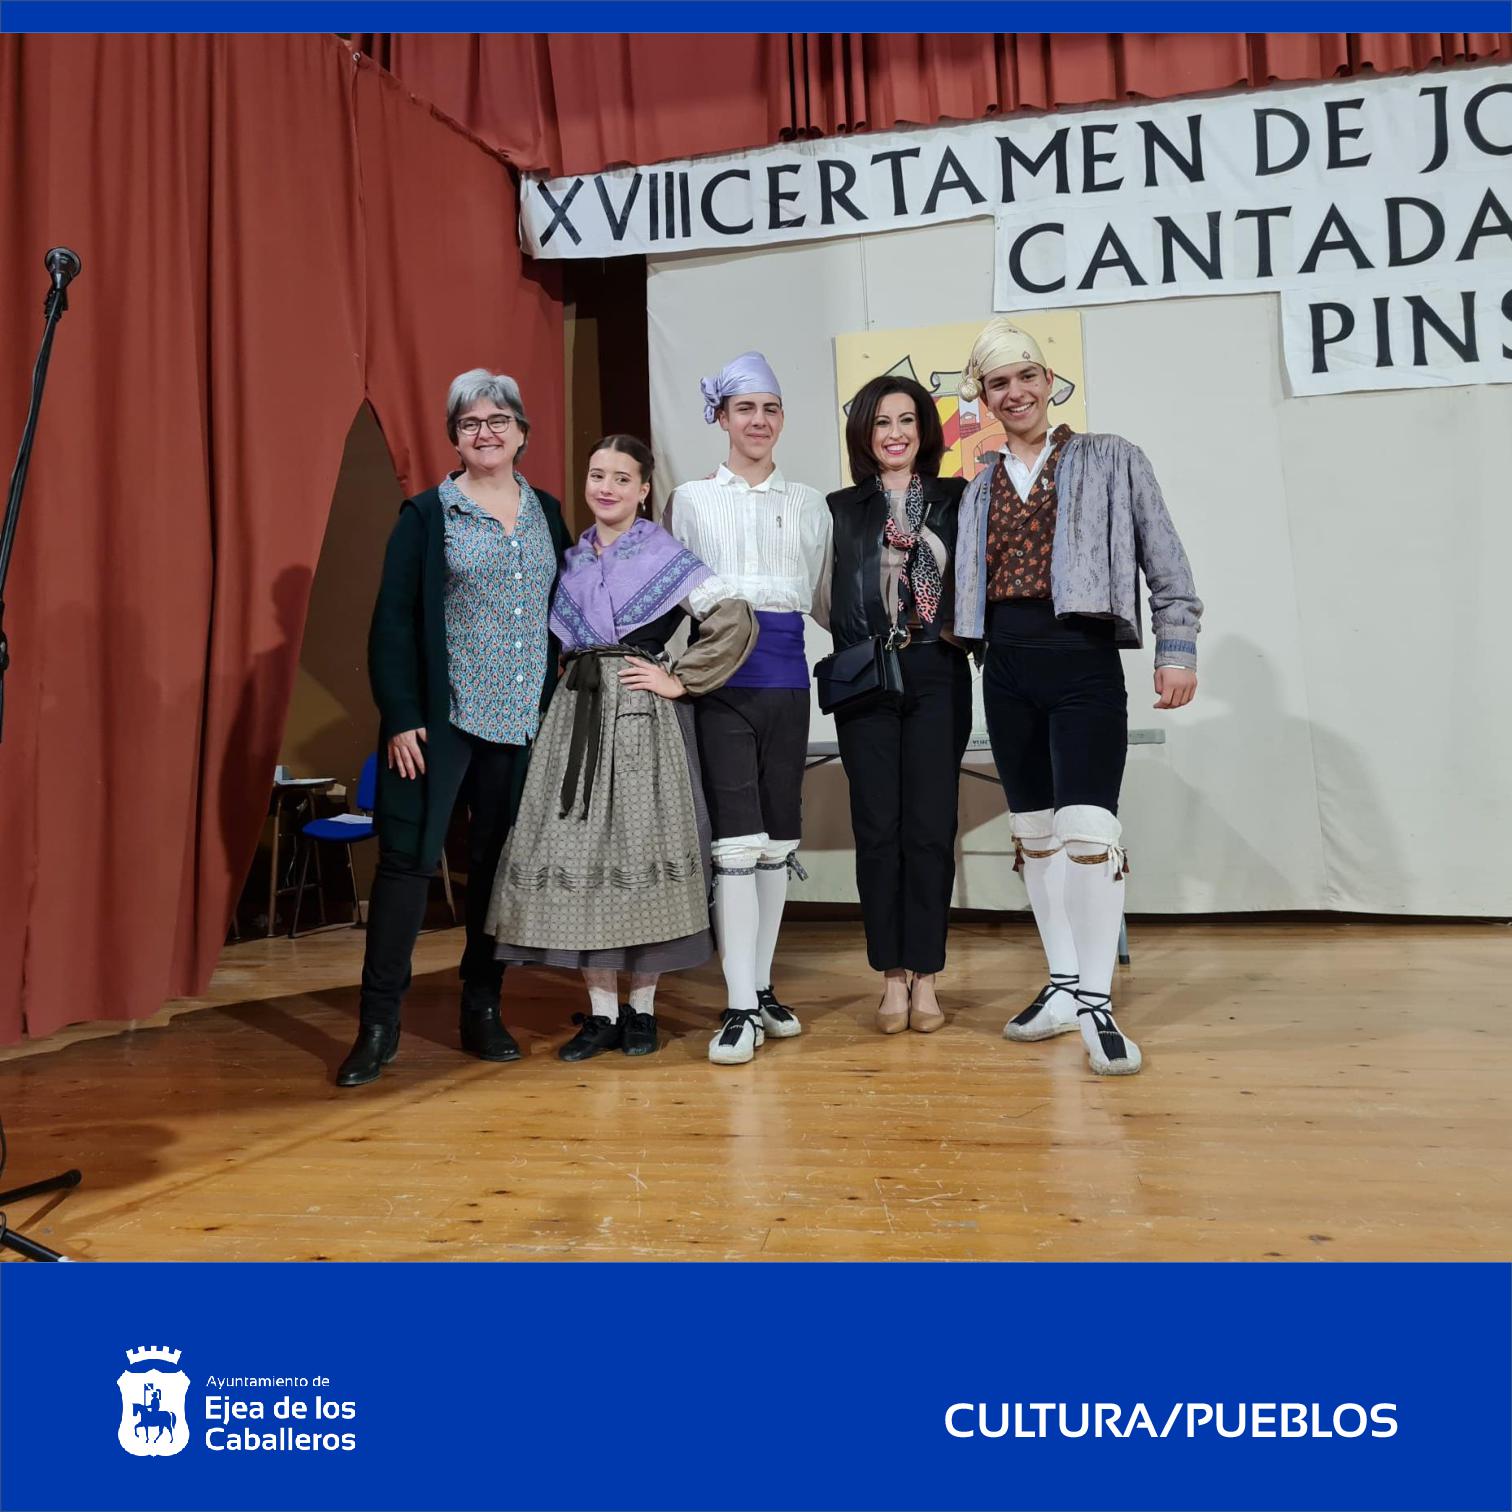 En este momento estás viendo Celebración del XVIII Certamen de Jota Aragonesa Cantada y Bailada en Pinsoro